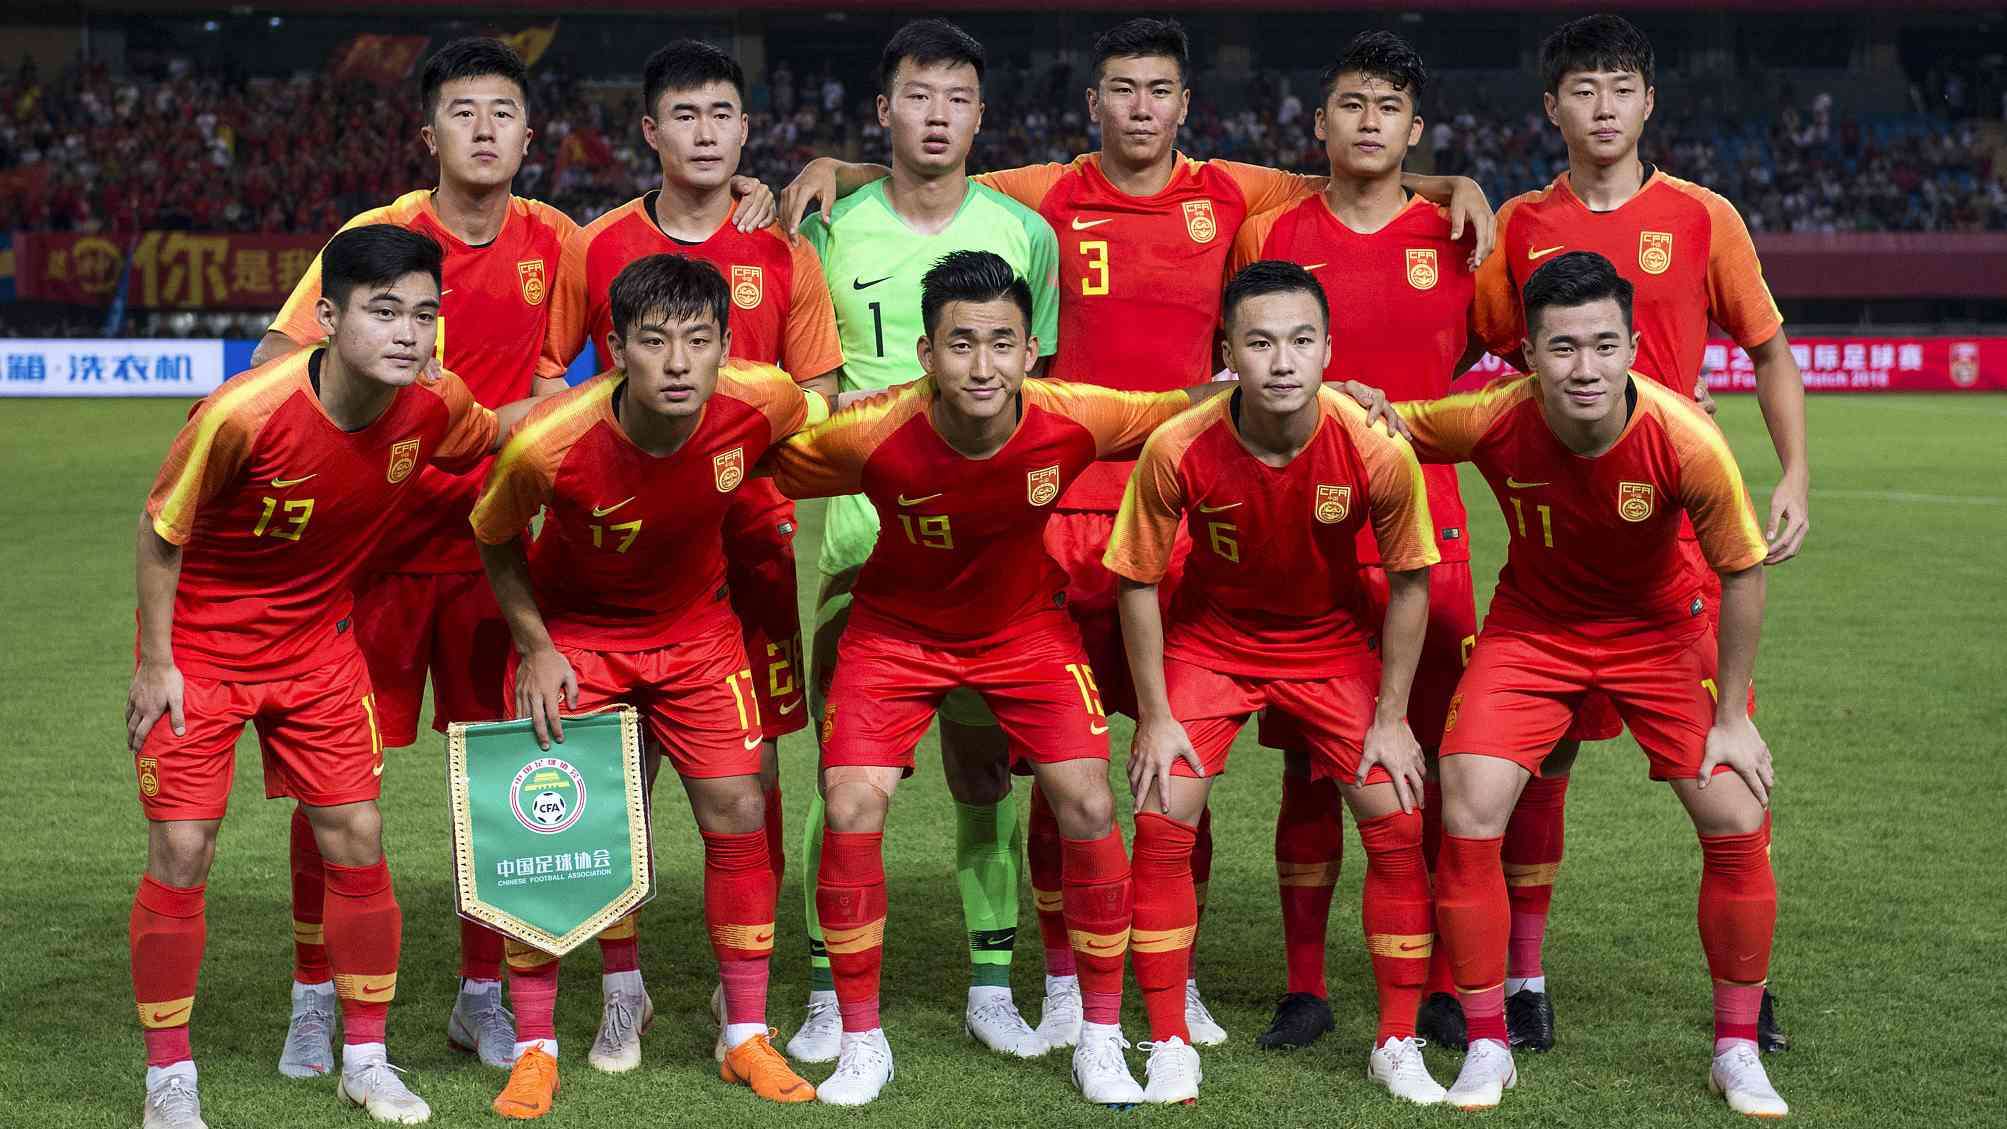 فوتبال آسیا-چین-asia football-china